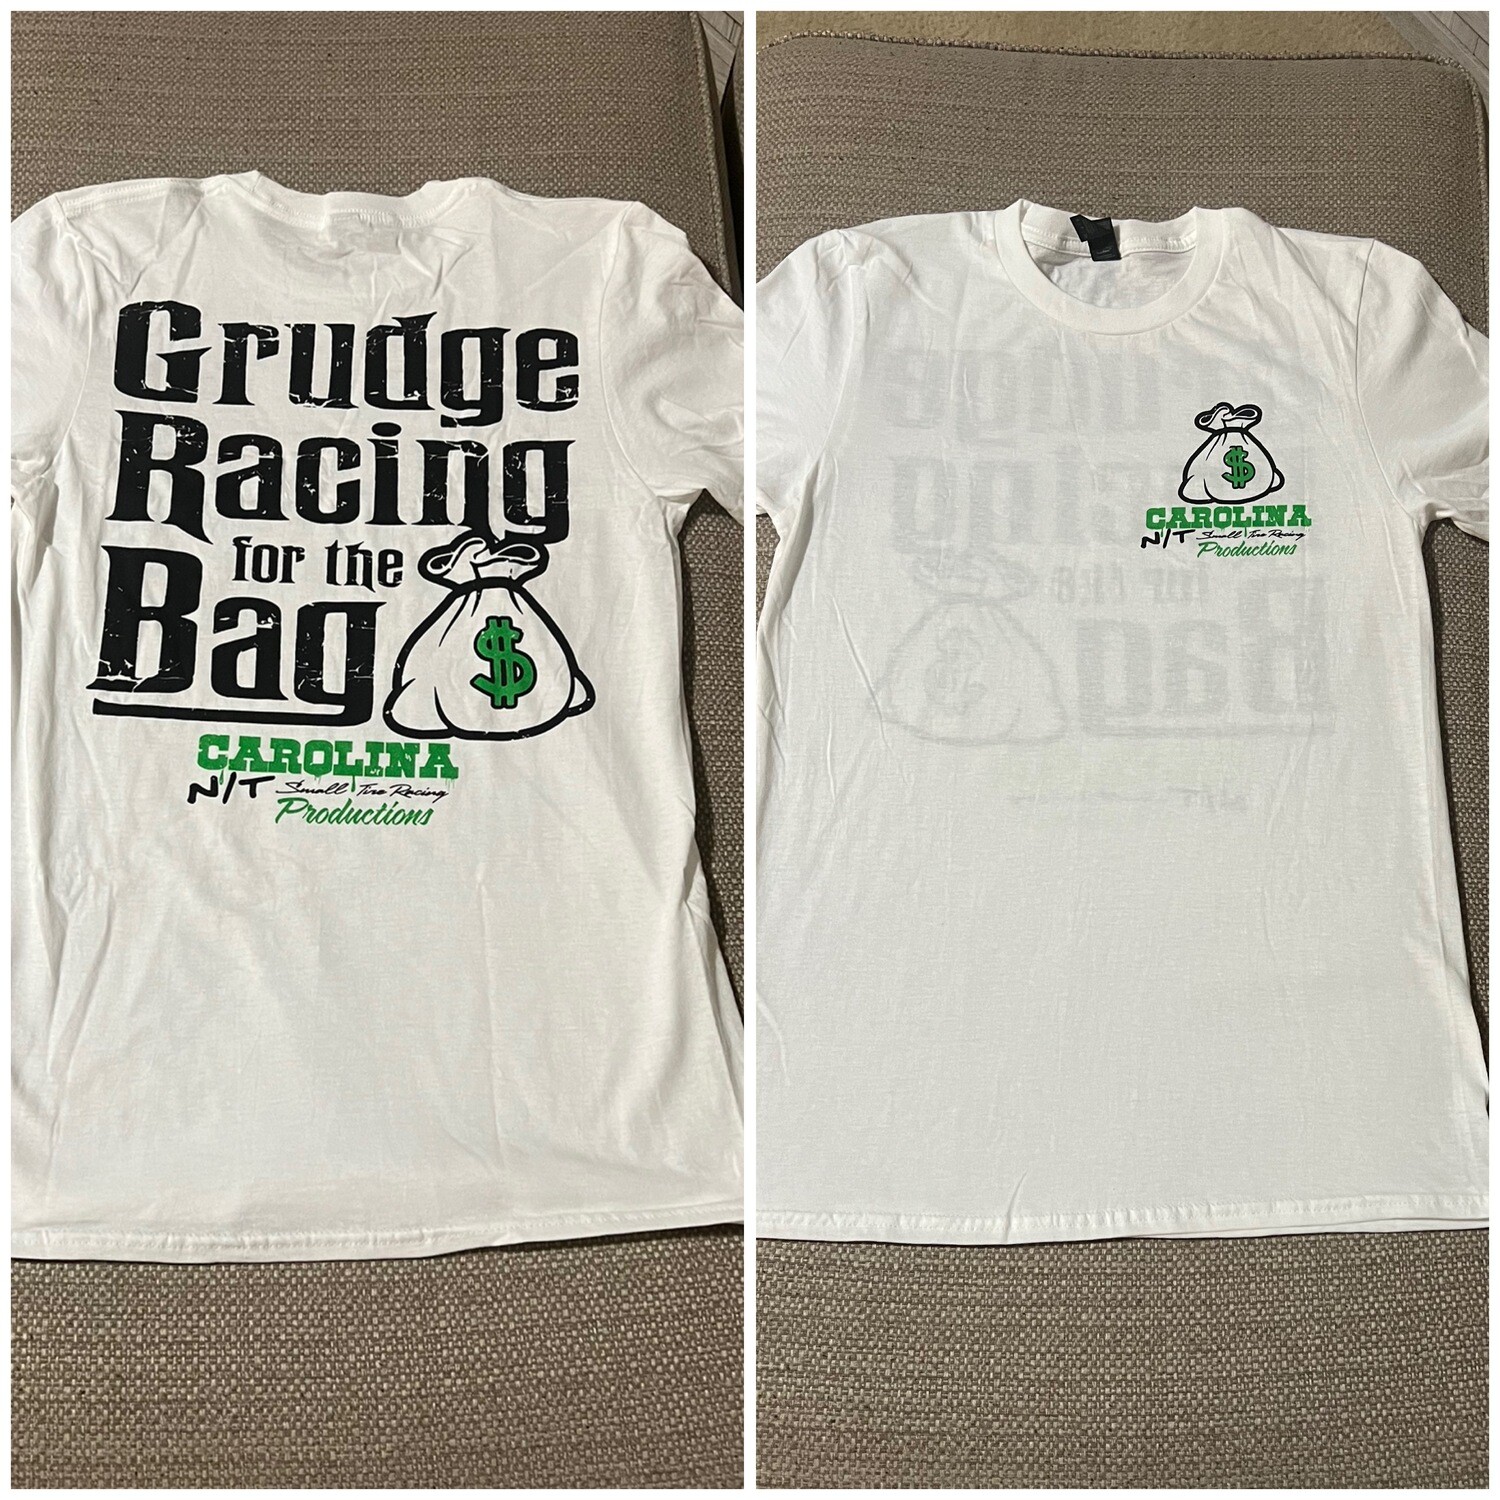 Grudge Racing for the Bag white Tee shirt